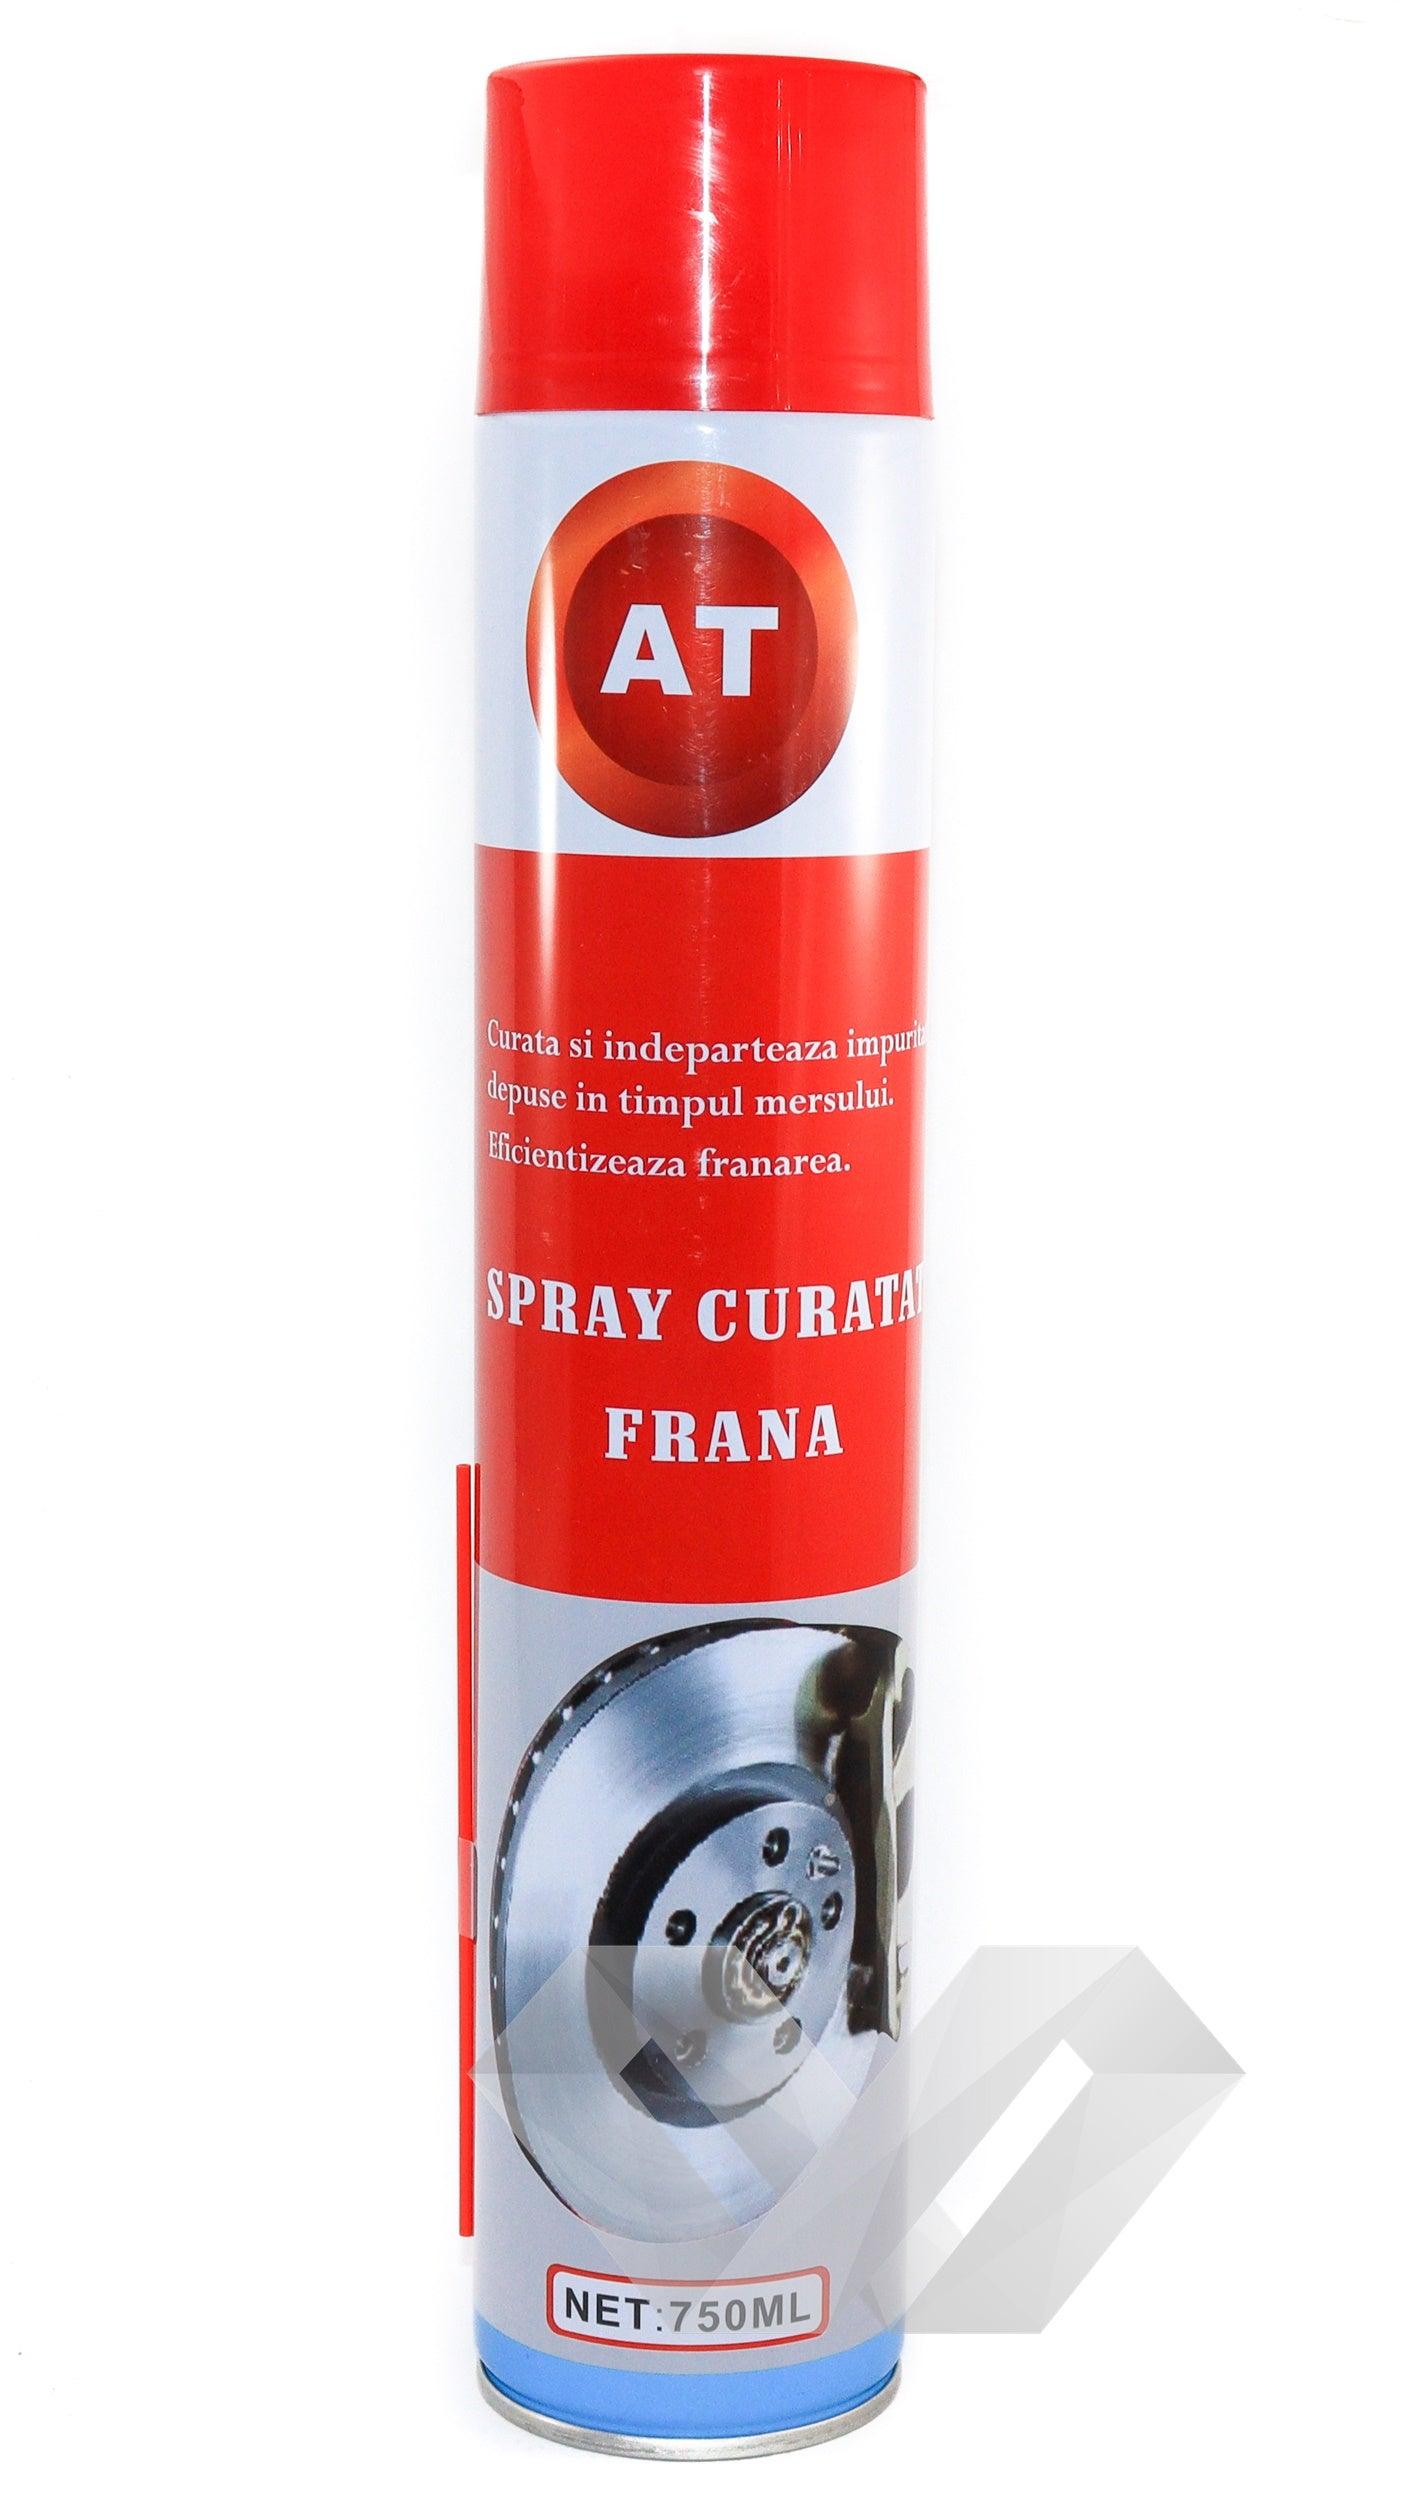 Spray curatat sistem franare AT, 750ml